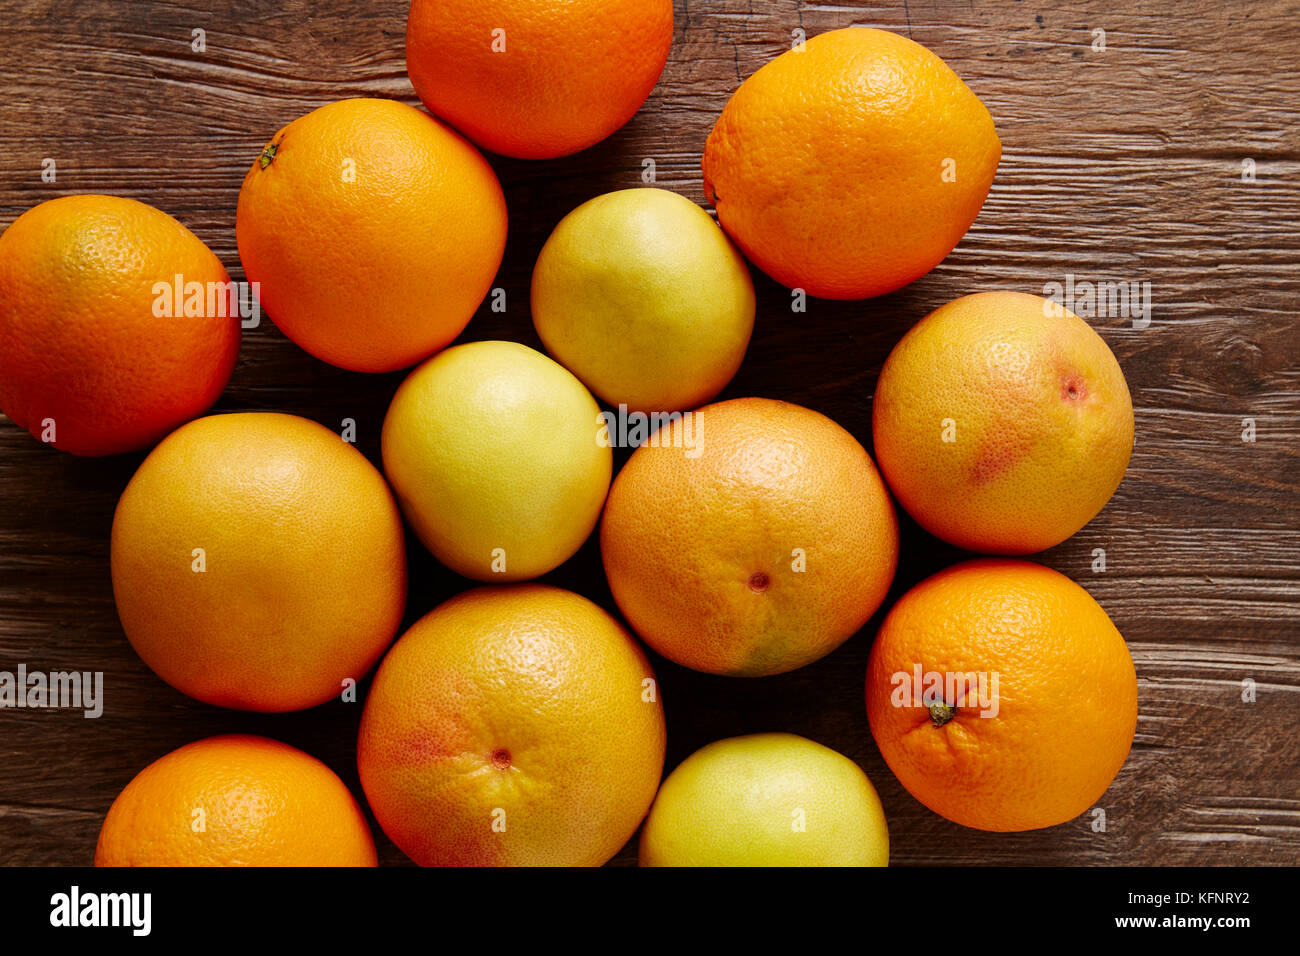 Orangen und grapfruits sweetys in einem Bündel von Zitrusfrüchten Stockfoto